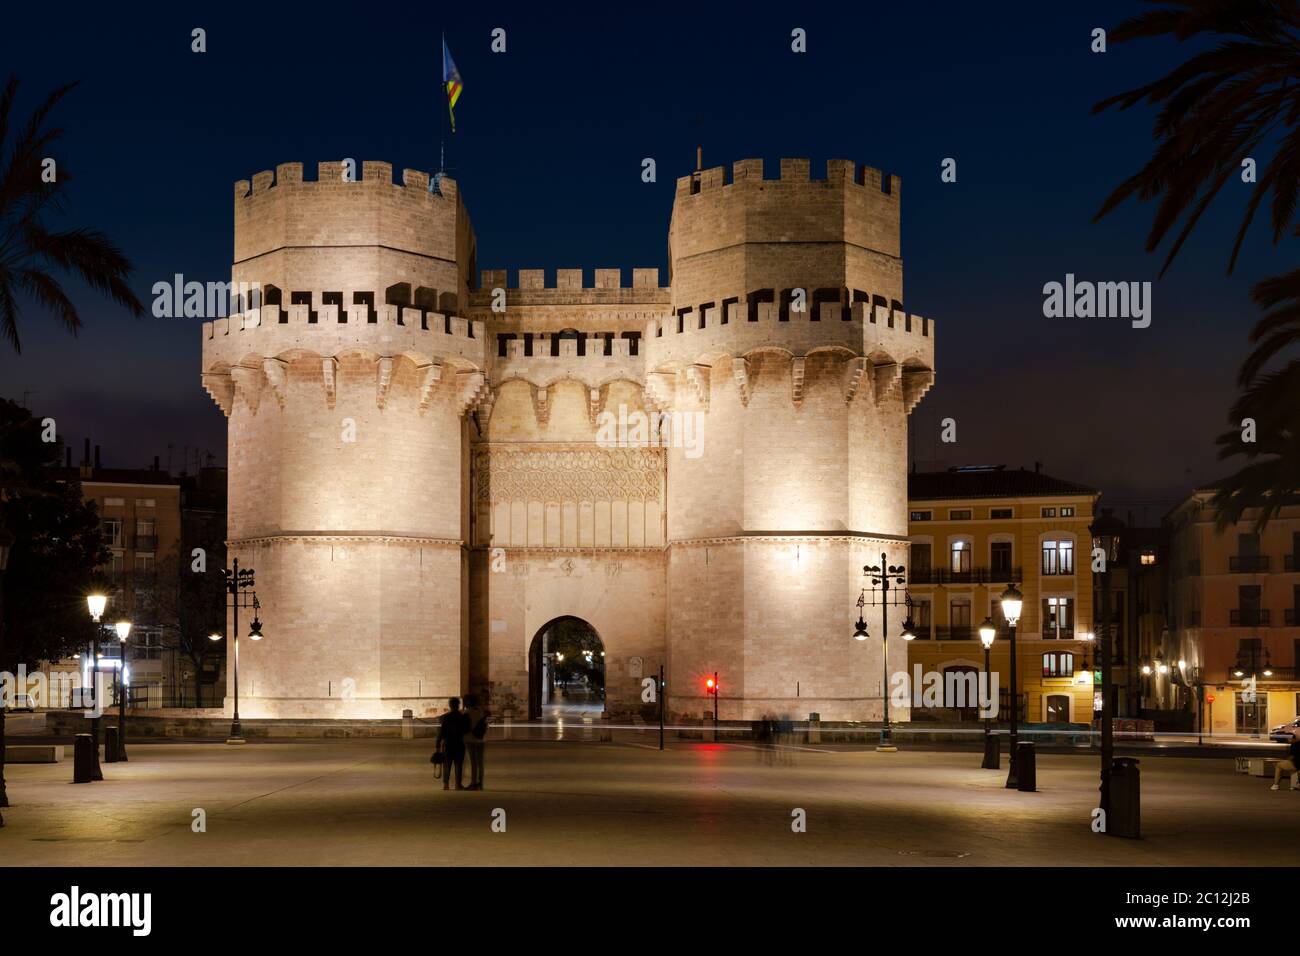 Les tours Serrano illuminent la nuit une des portes de la ville médiévale d'origine, Valence, Espagne. Banque D'Images